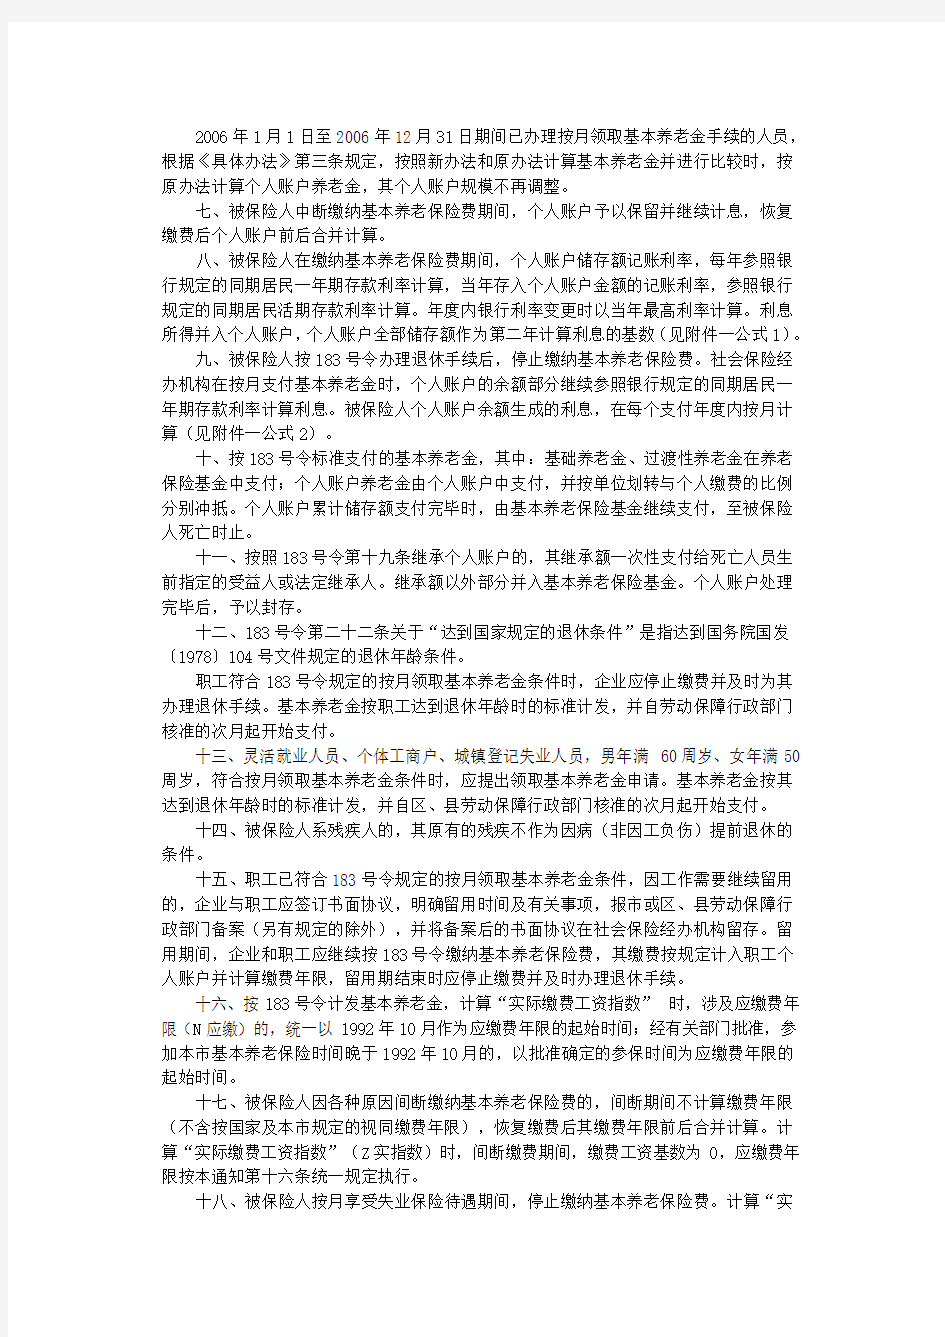 关于贯彻实施《北京市基本养老保险规定》有关问题的通知